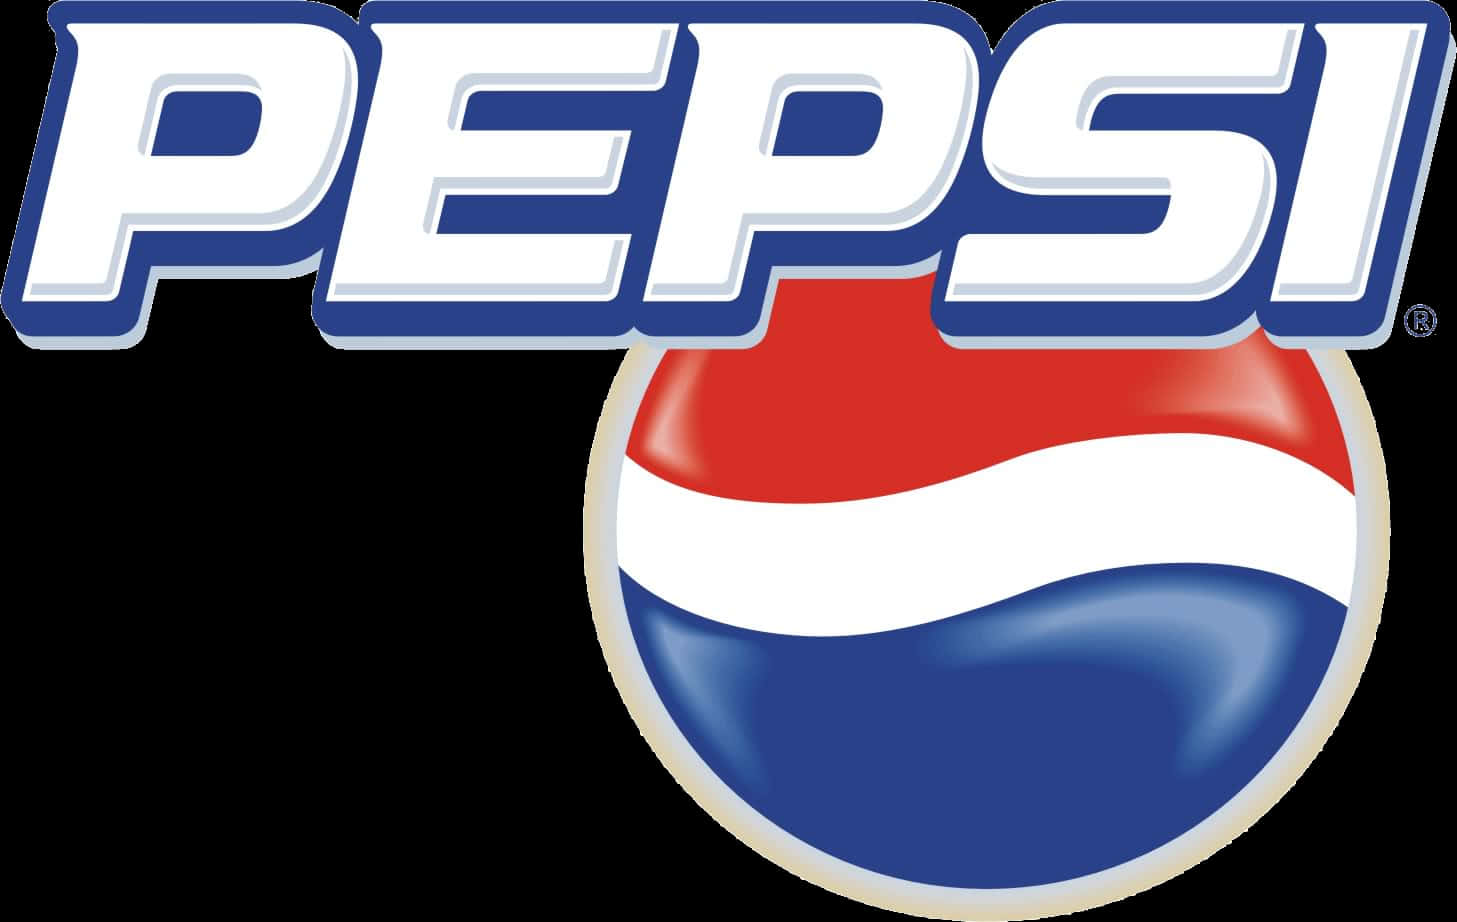 Pepsi Logo Classic Design